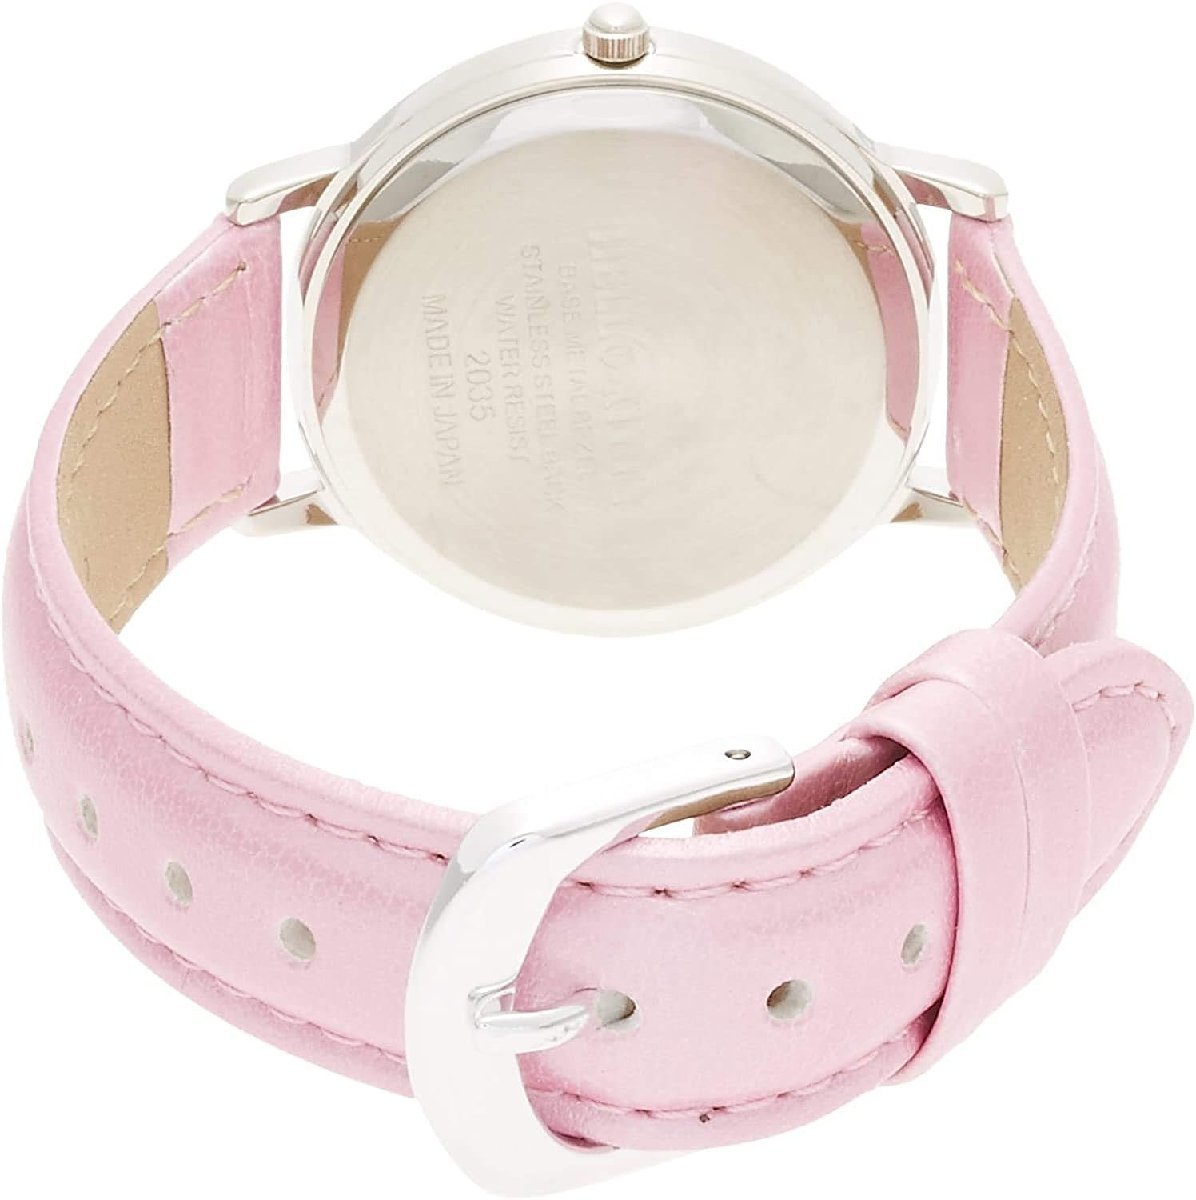  Citizen наручные часы Hello Kitty водонепроницаемый кожа ремень сделано в Японии 0017N001 розовый 4966006059823/ бесплатная доставка почтовая доставка отметка ..